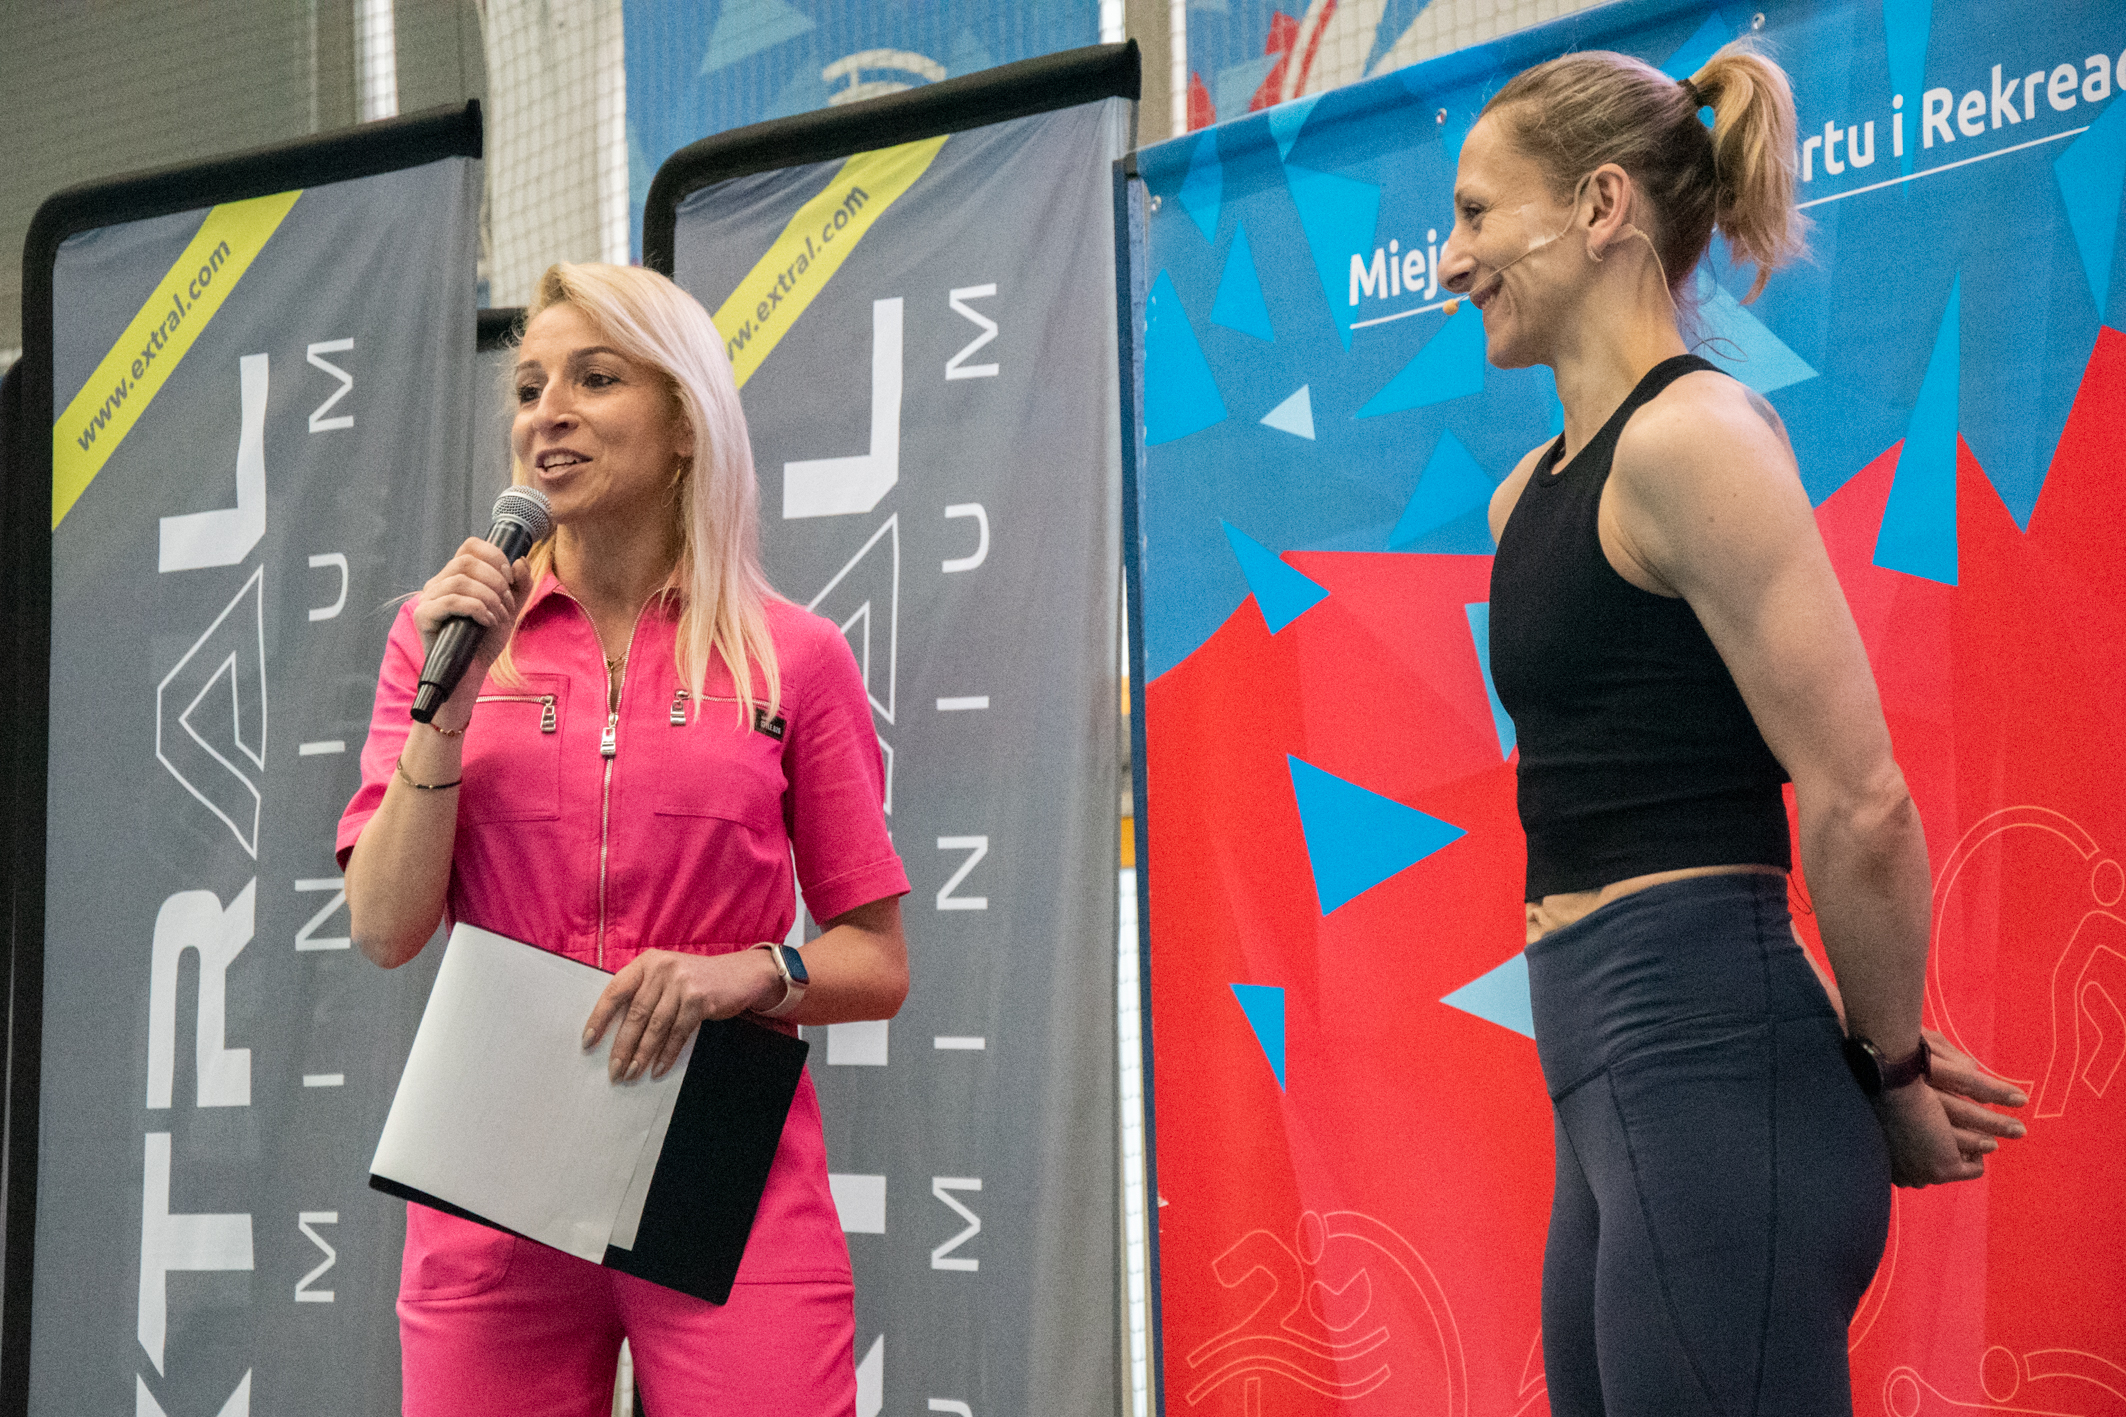 Zastępca dyrektora MOSiR, Anna Ujma (po lewej) oraz instruktor fitness, Weronika Porada (po prawej)